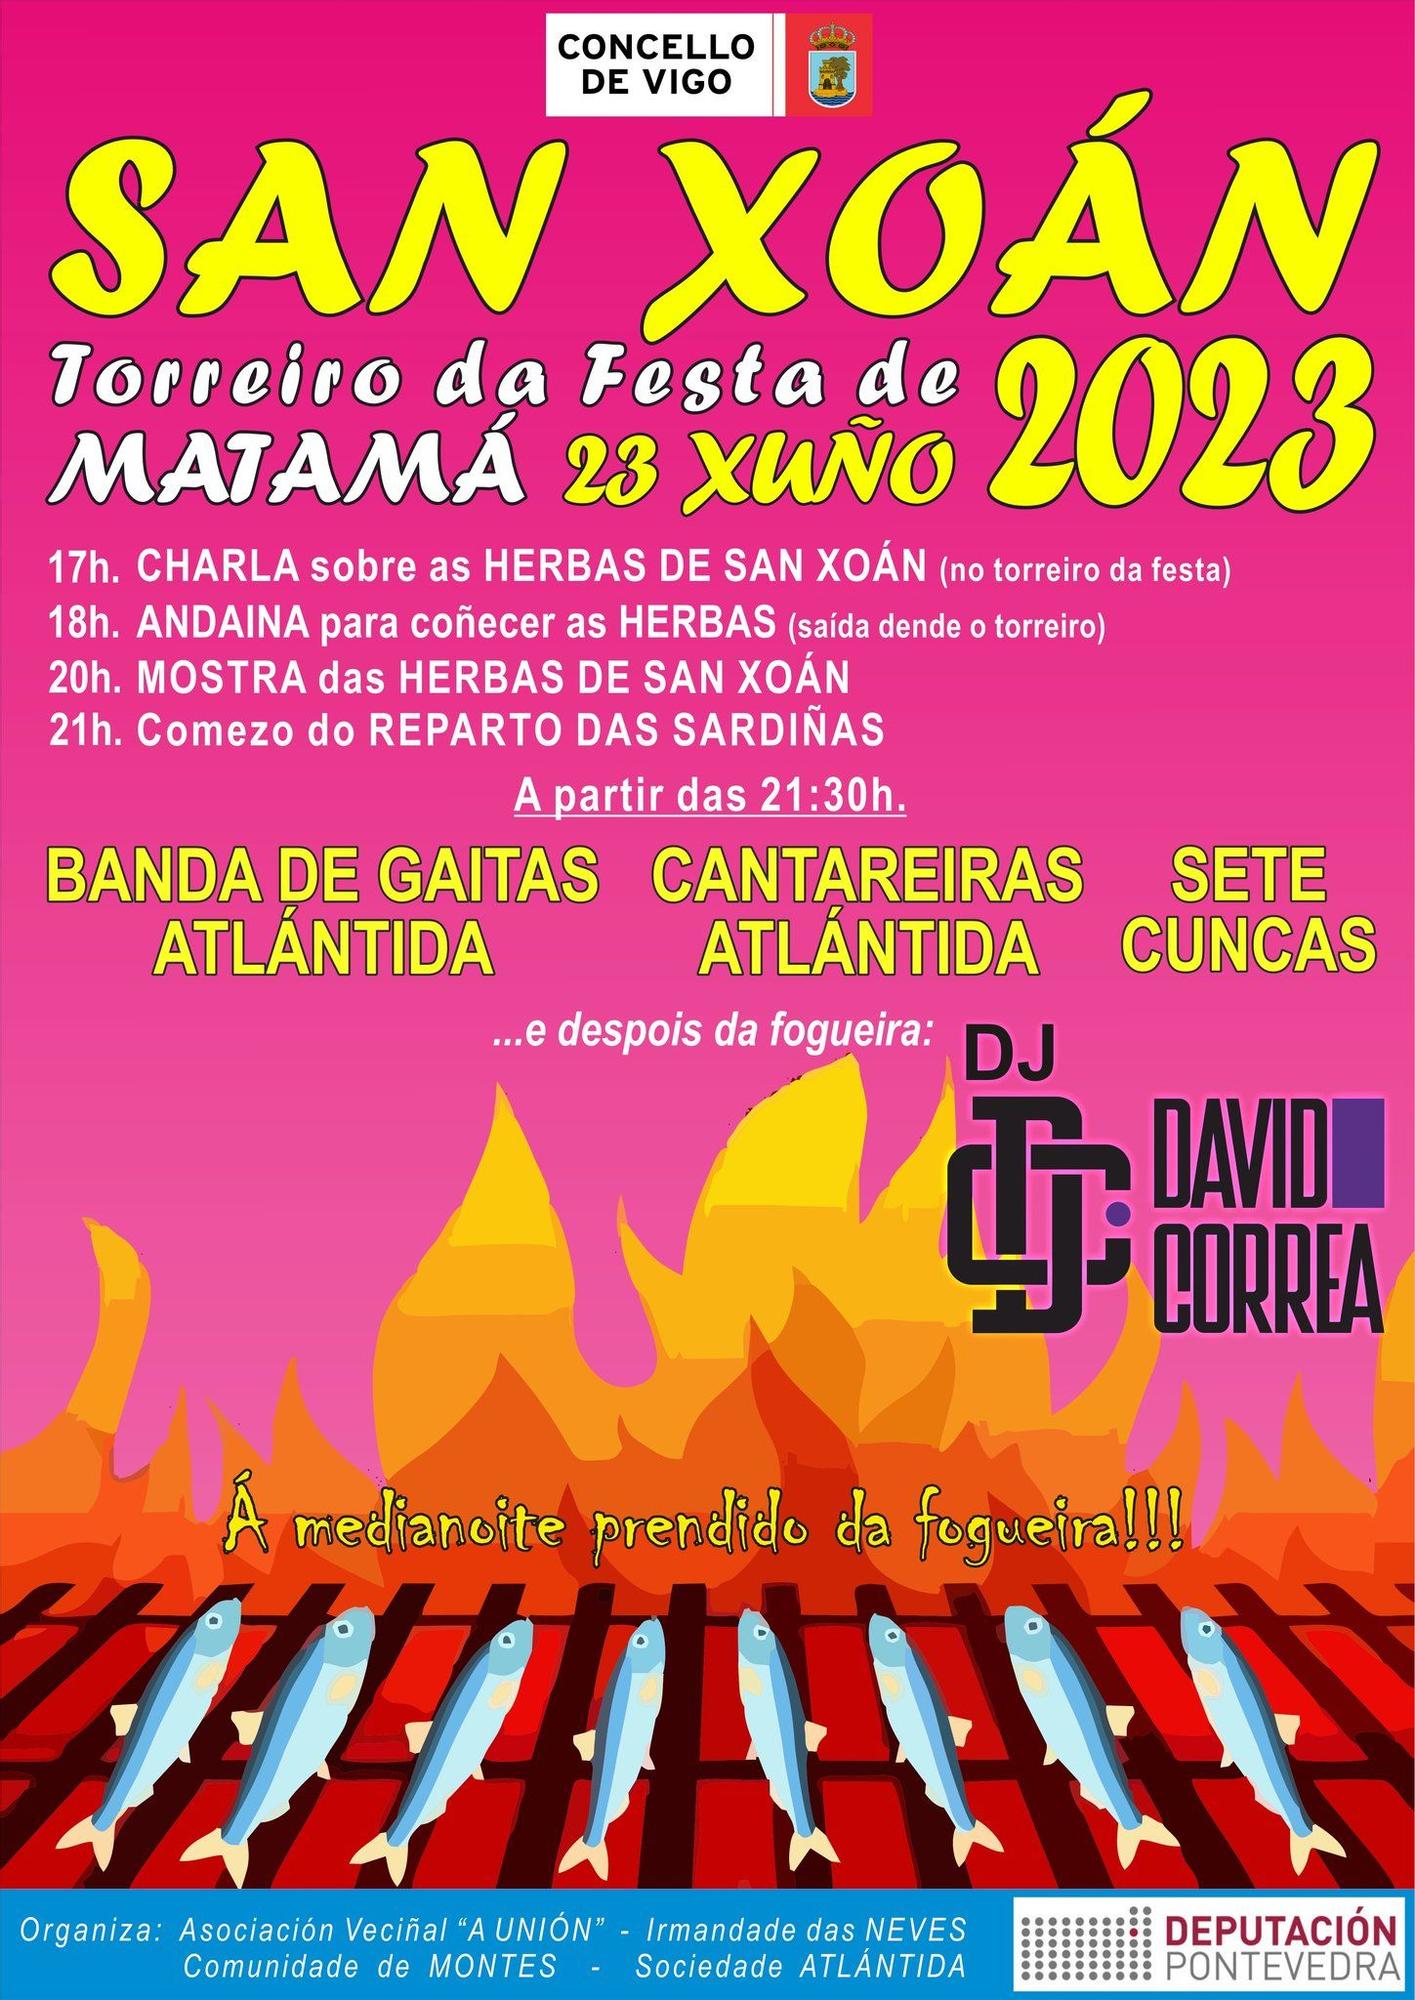 Cartel de la fiesta de San Juan 2023 en Matamá.